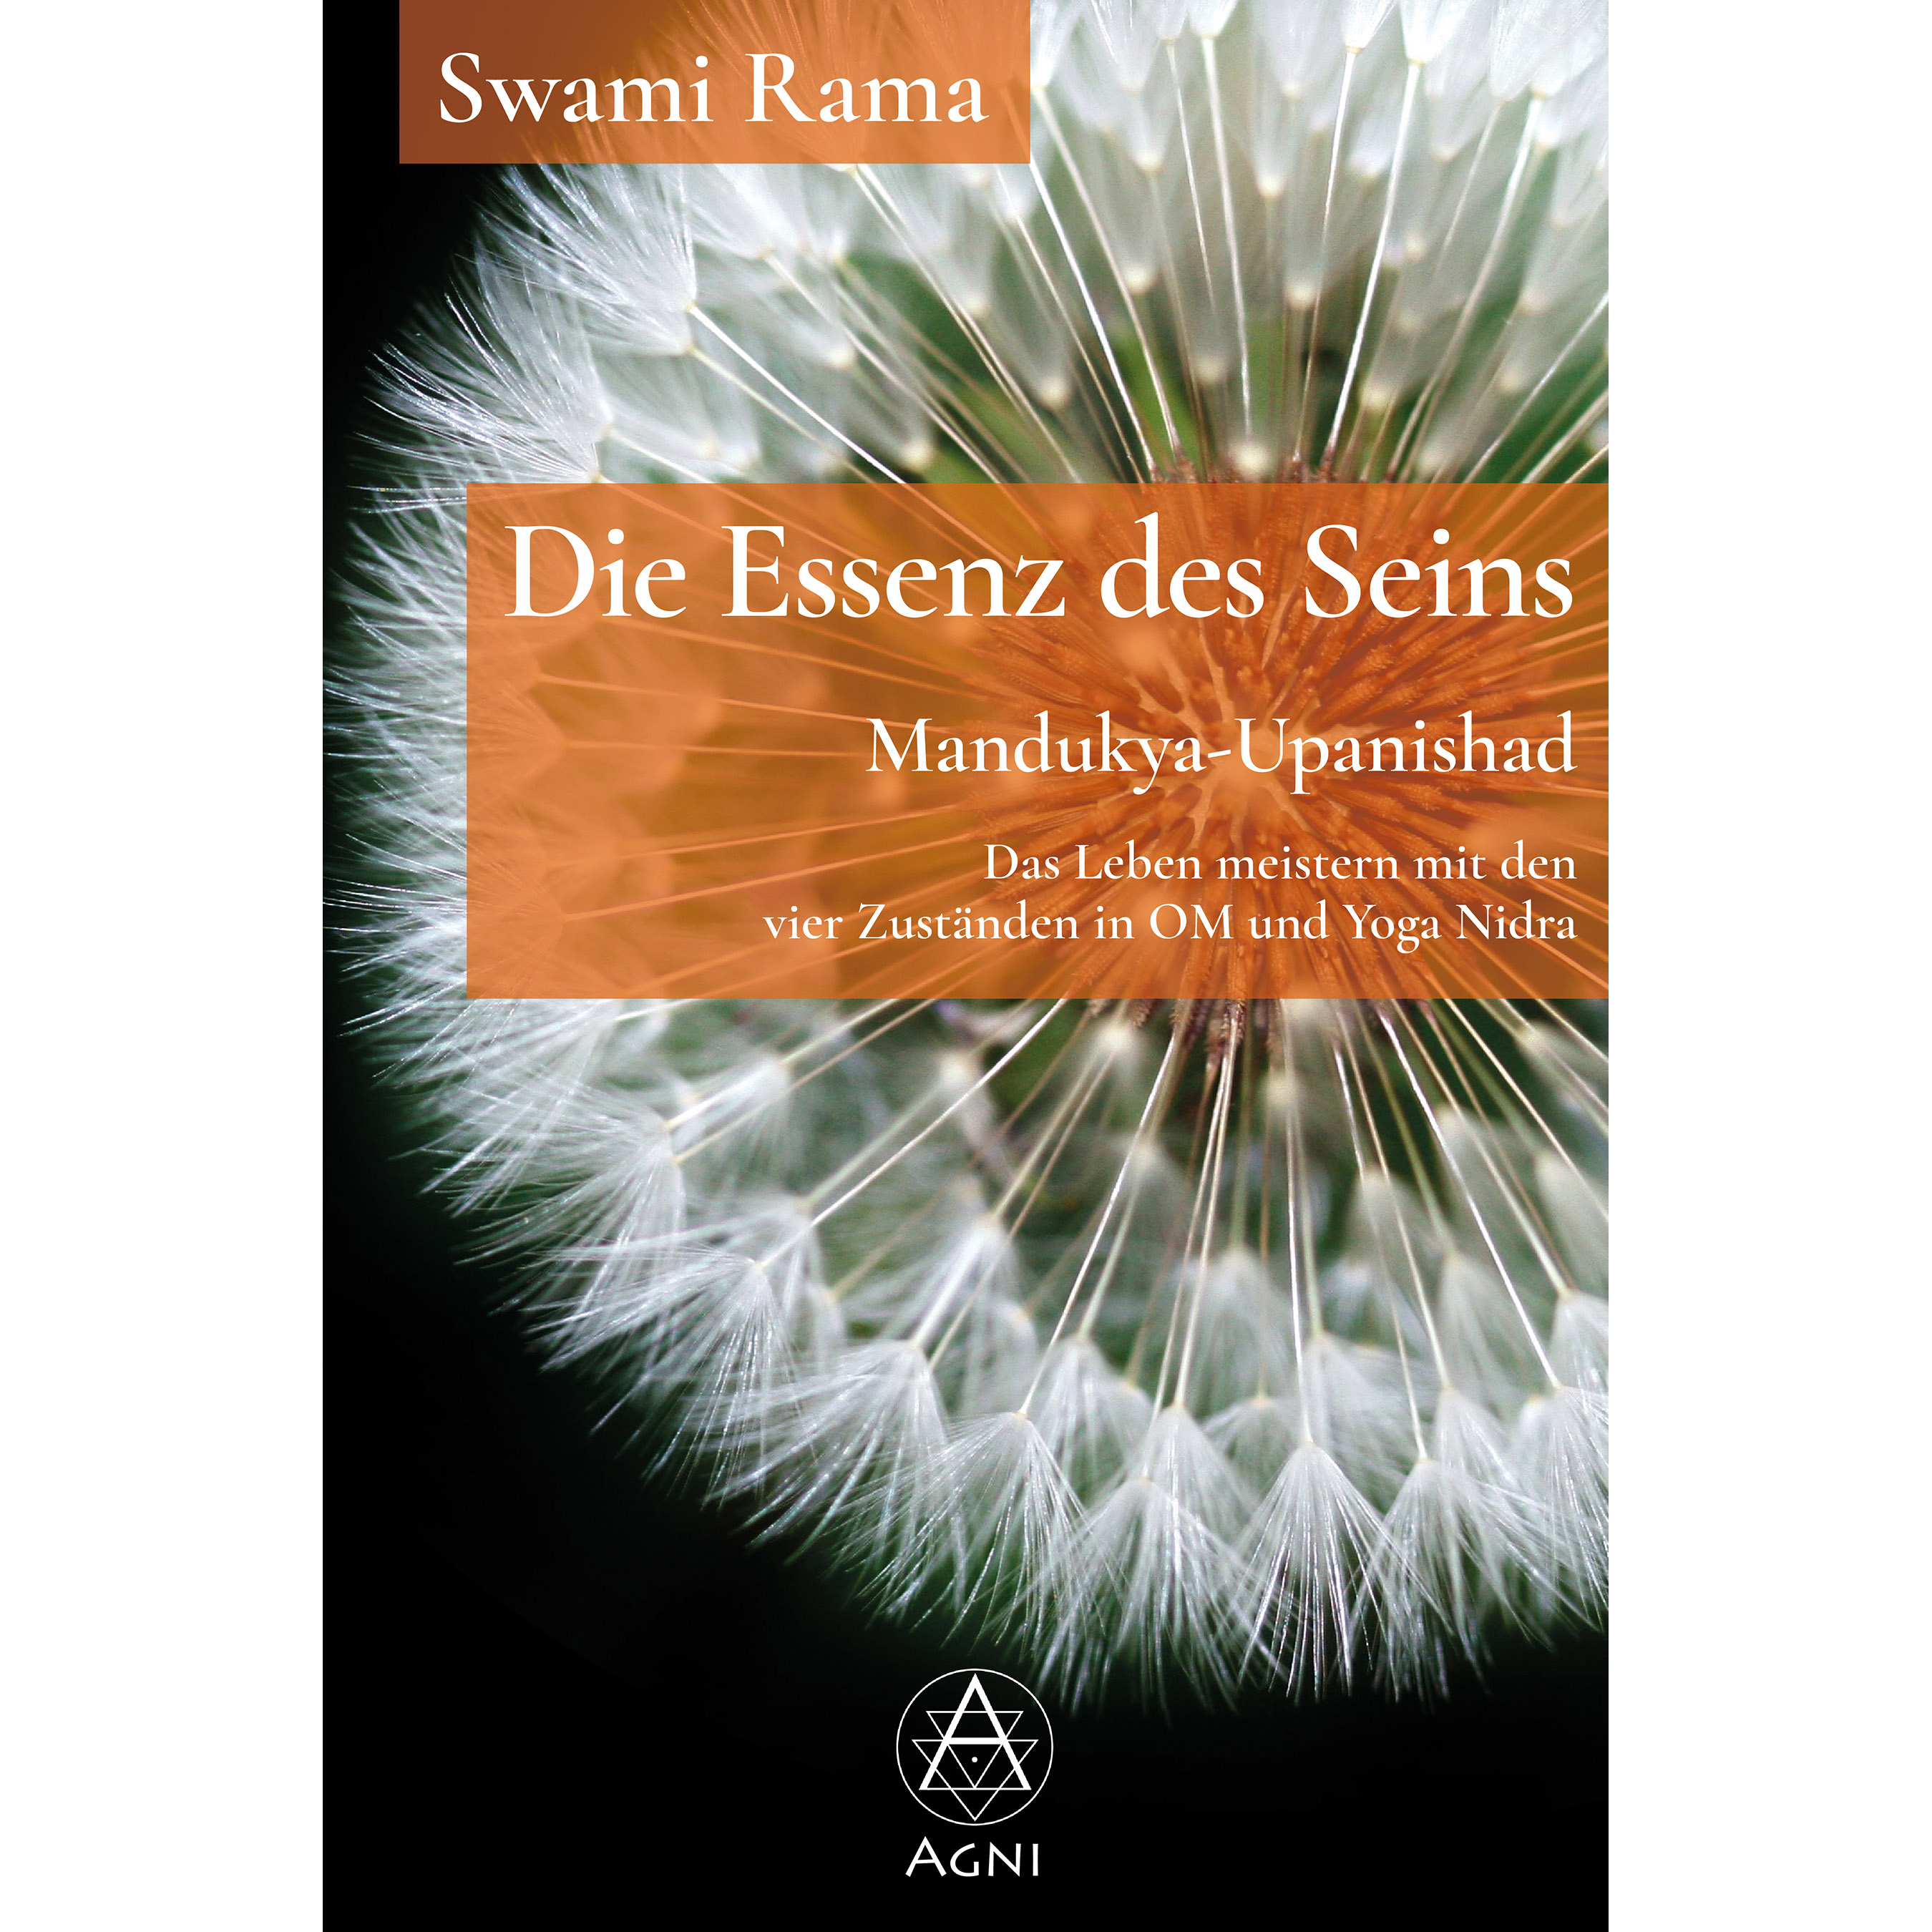 AV012 Die Essenz des Seins - Mandukya-Upanishad (Swami Rama) - Yoga Nidra - Agni Verlag Cover